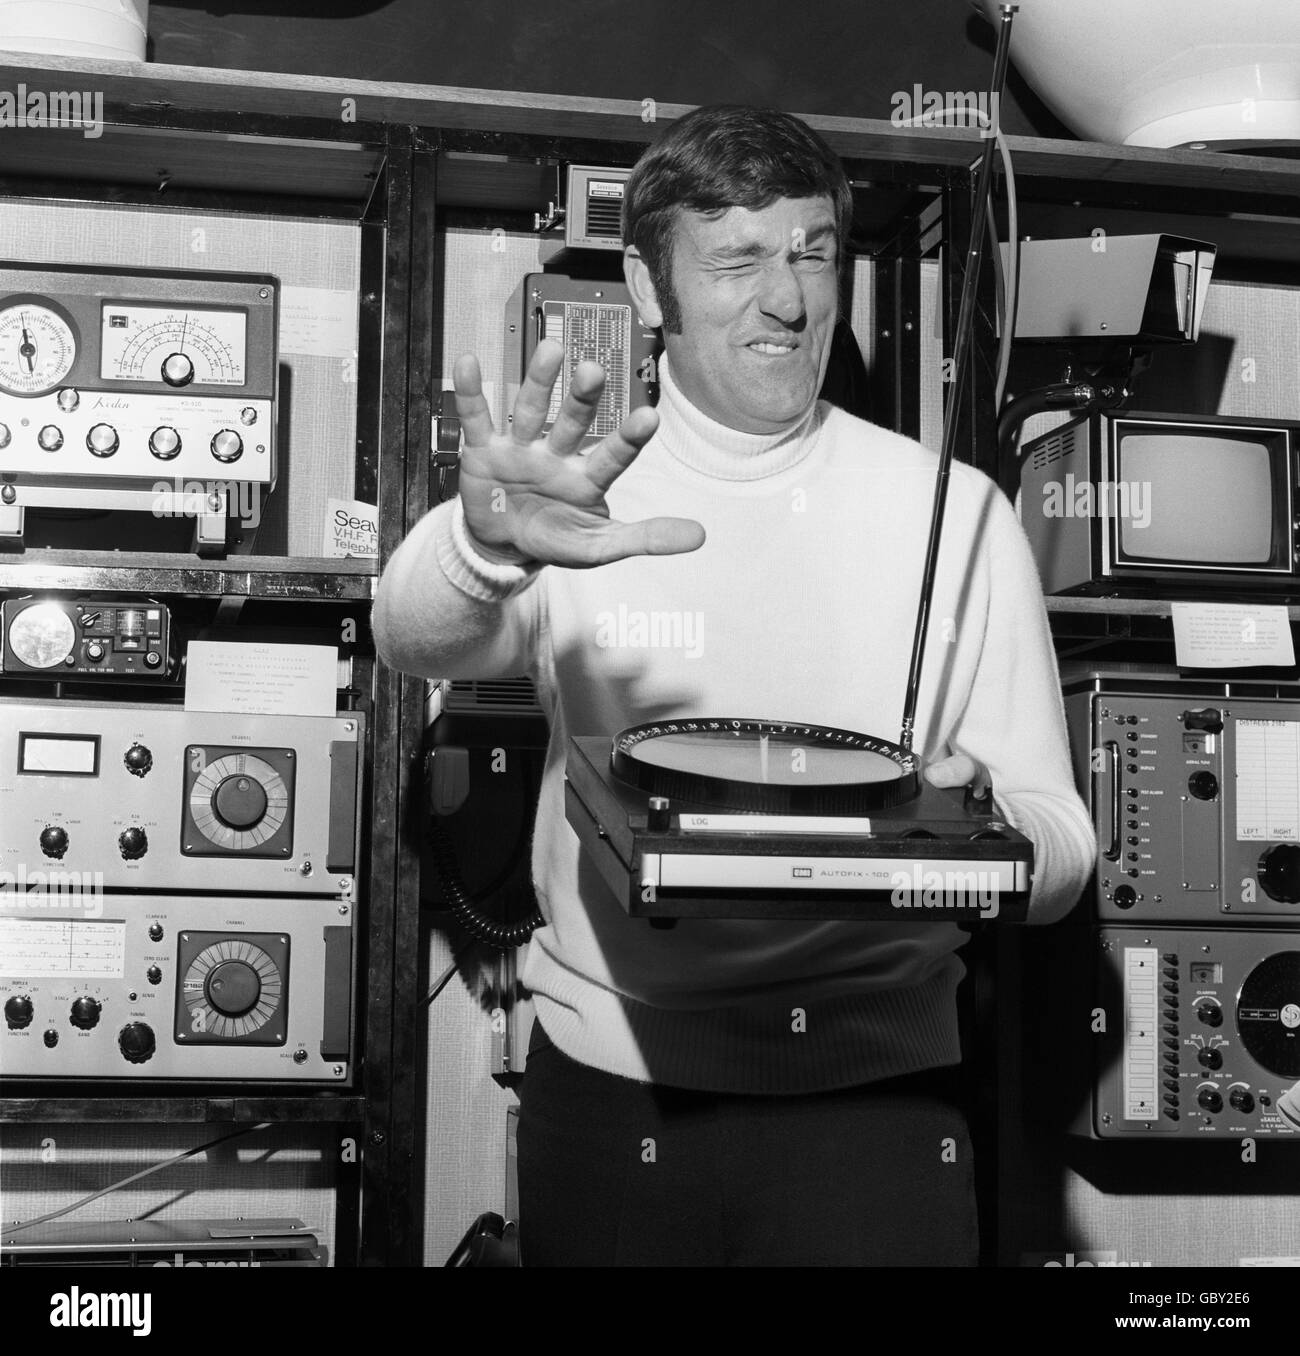 Graham Kerr, den Fernsehzuschauern als der "galoppierende Gourmet" bekannt, geht in seiner Freizeit segeln und testet einen automatischen Radiorichtungsfinder, den er gestern auf der Boat Show, Earls Court, gekauft hat. Es war der Autofix 100, der für den Einsatz auf einem kleinen Kraftfahrzeug konzipiert wurde, das er für seine Rennketsche "Treena" wollte. Stockfoto